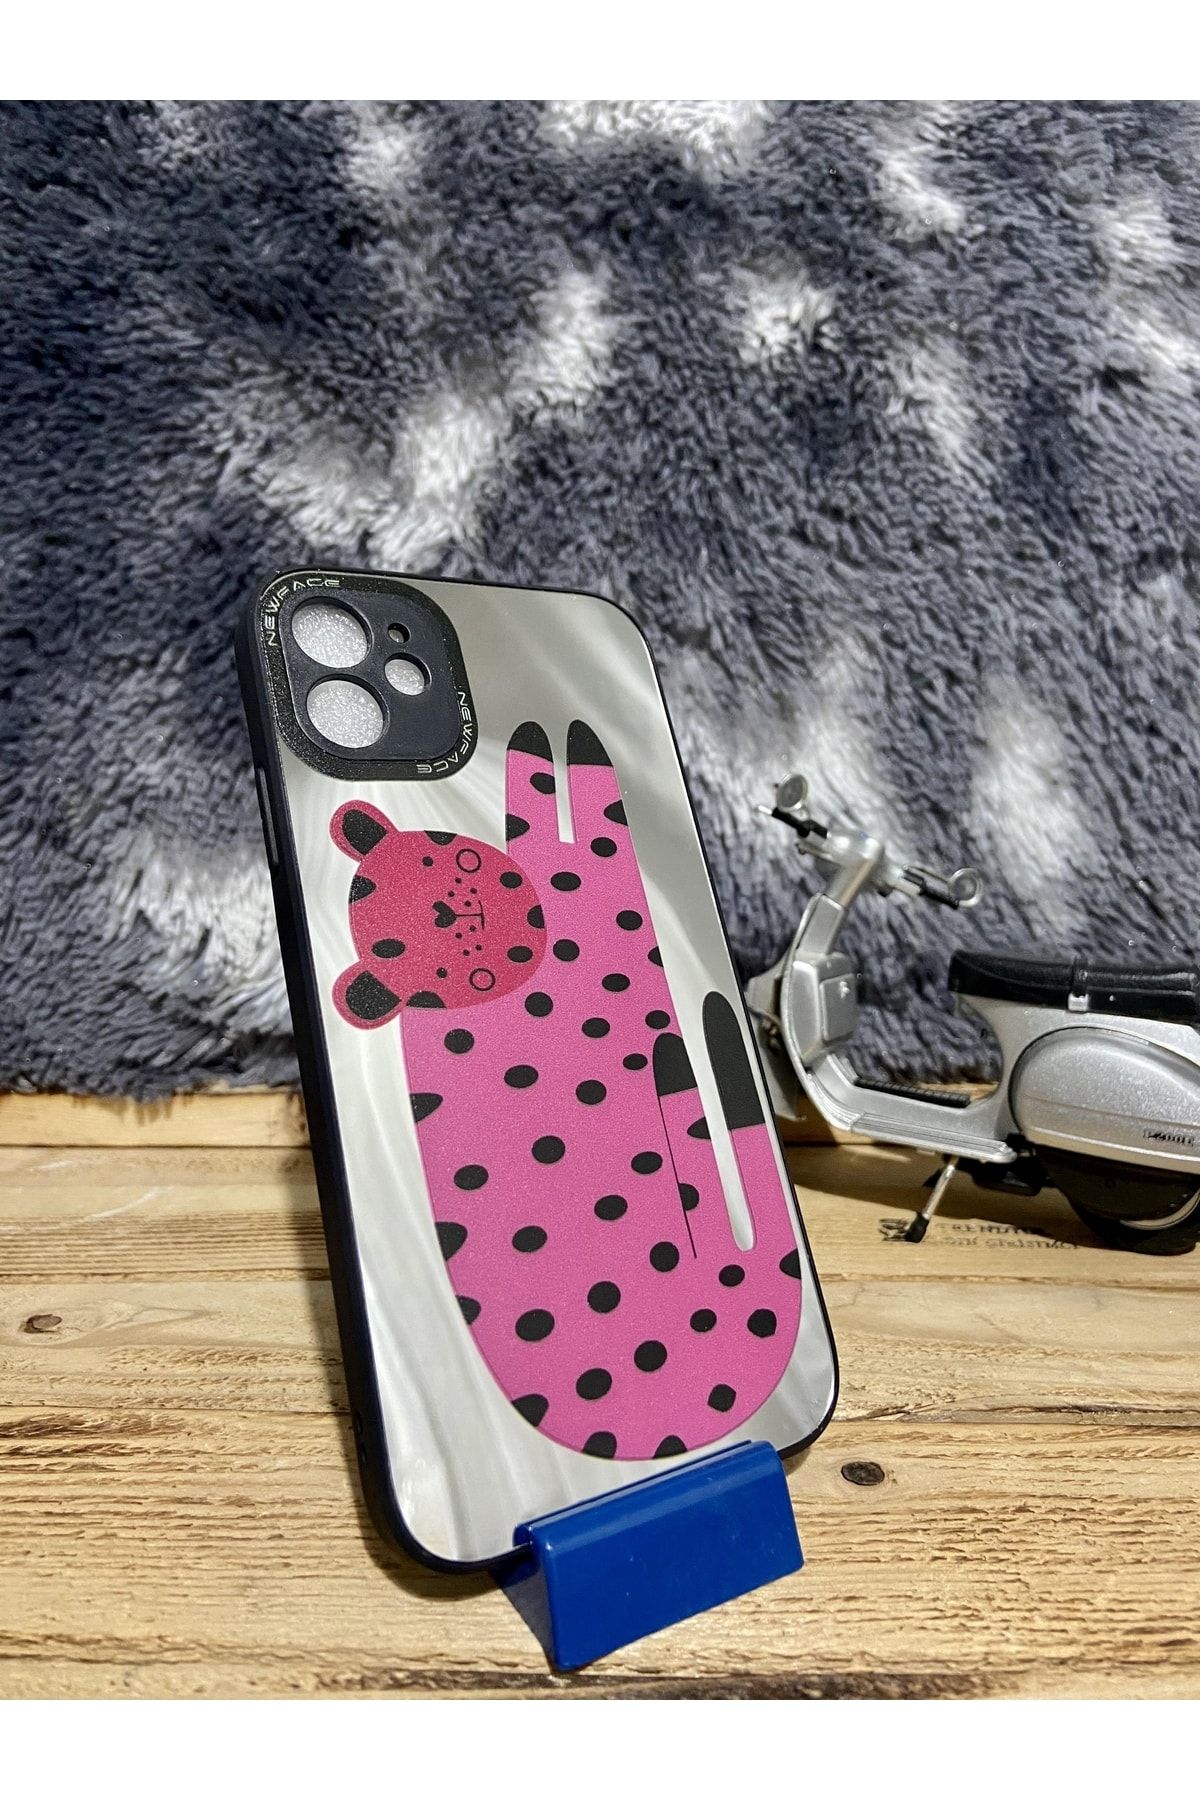 Dcstore Iphone 11 Aynalı Kılıf Puantiye Cat Desenli Lüx Lazer Baskılı Case